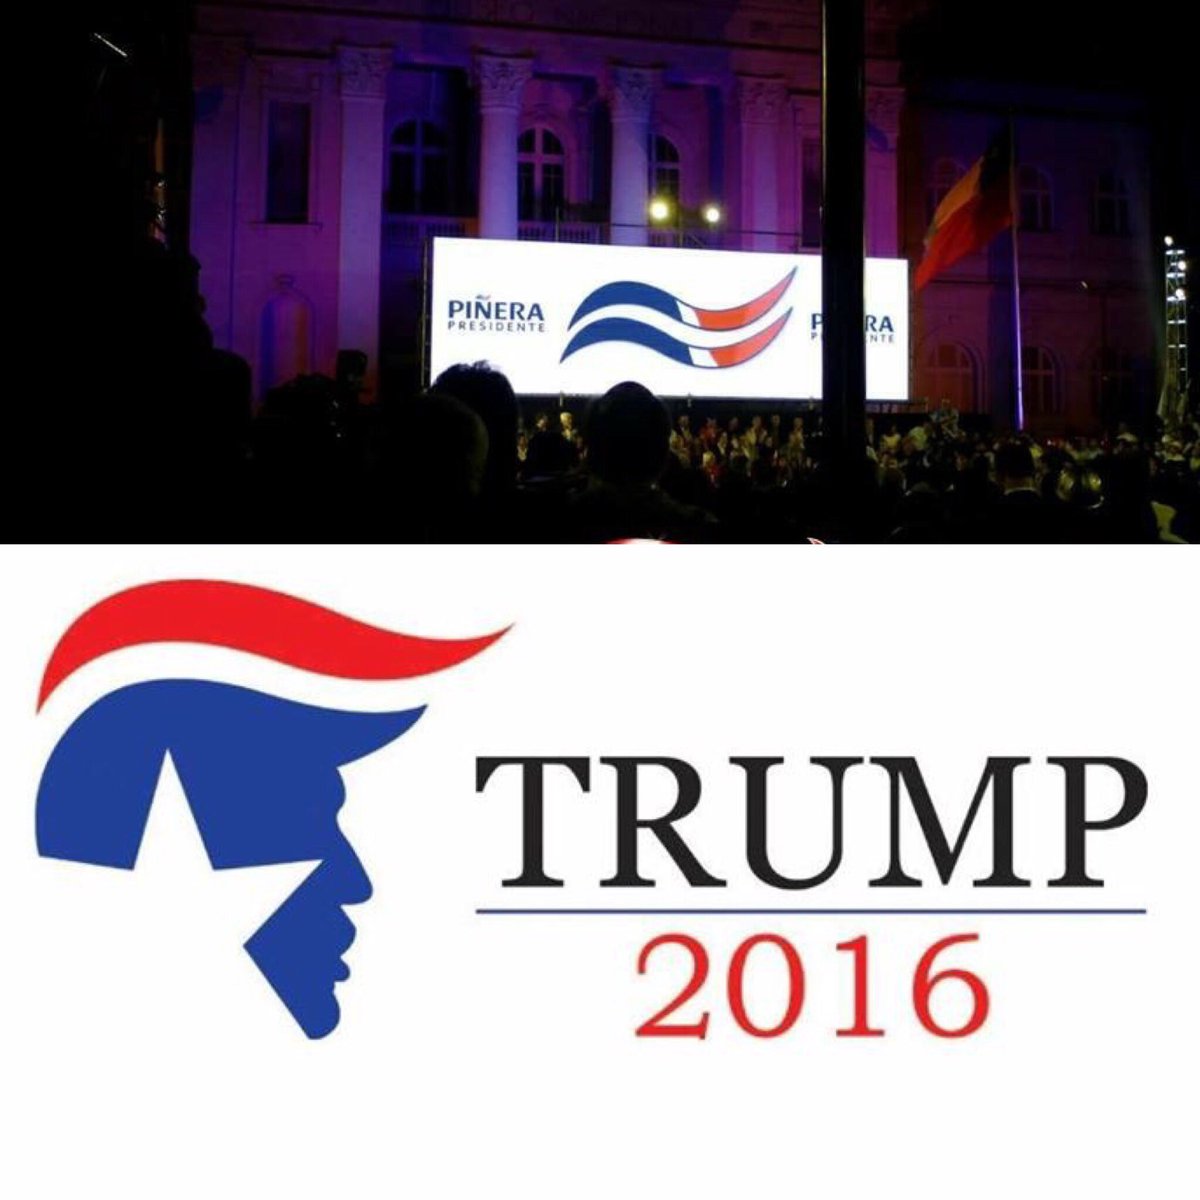 No pasó piola: El logo de Piñera inspirado en el de Donald Trump